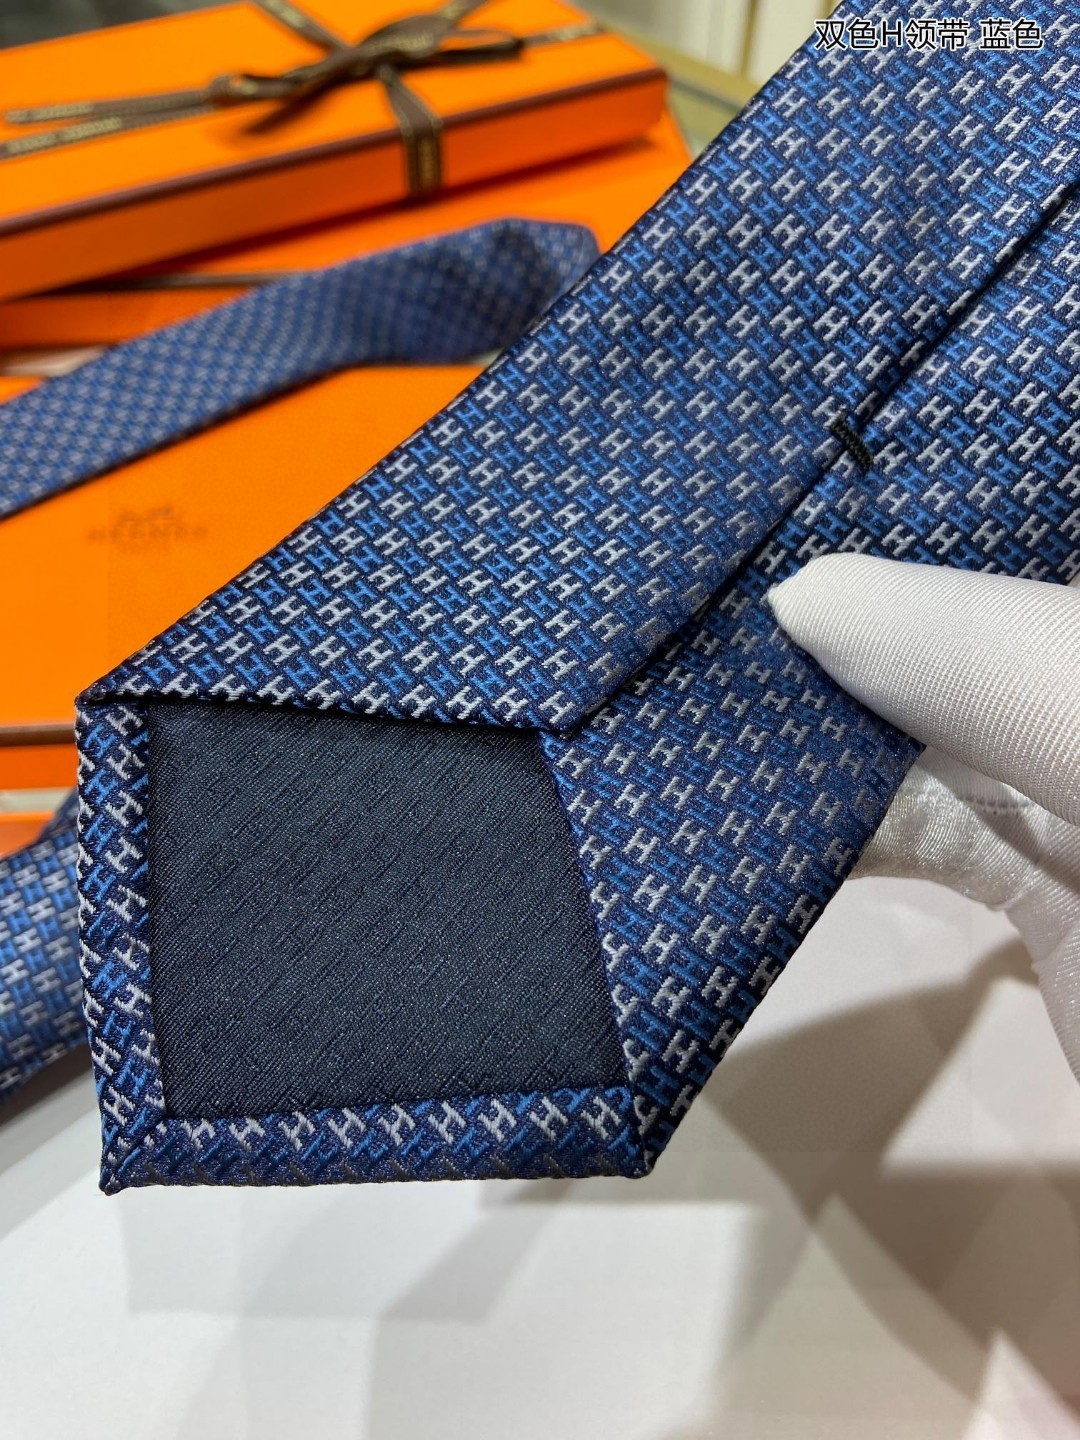 男士新款领带系列双色H领带稀有H家每年都有一千条不同印花的领带面世从最初的多以几何图案表现骑术活动为主到